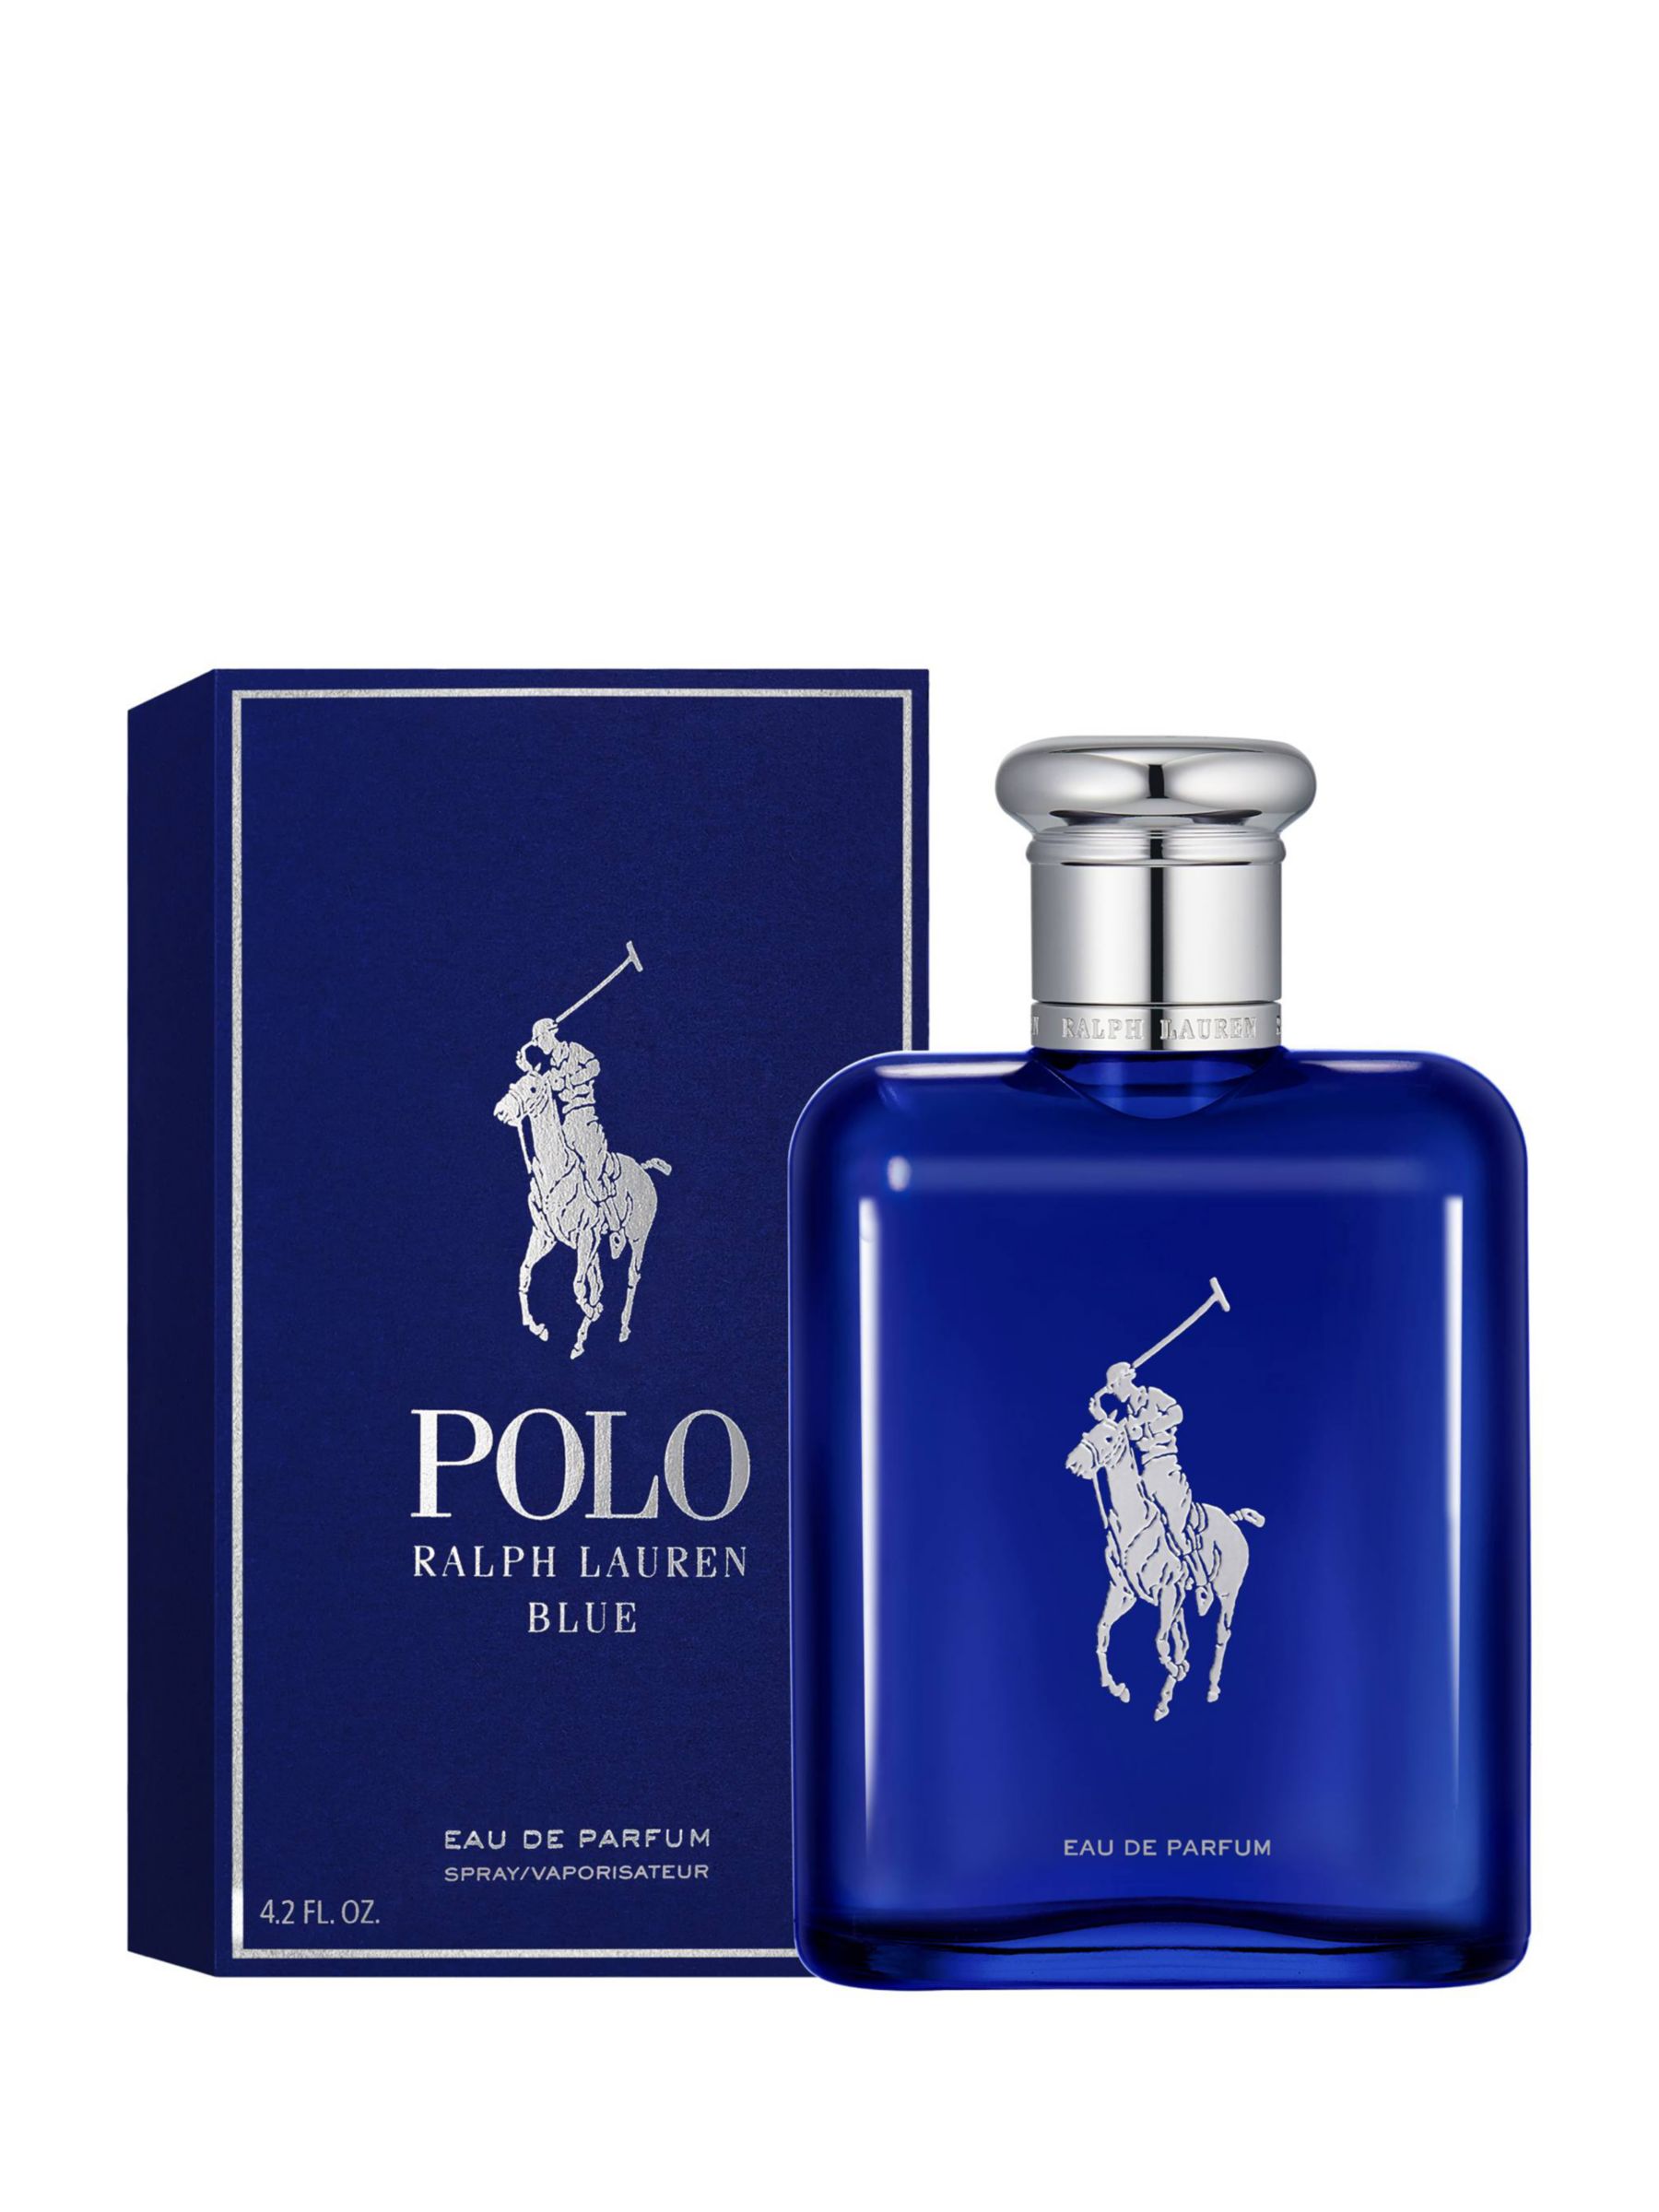 Ralph Lauren Polo Blue Eau de Parfum, 125ml at John Lewis & Partners